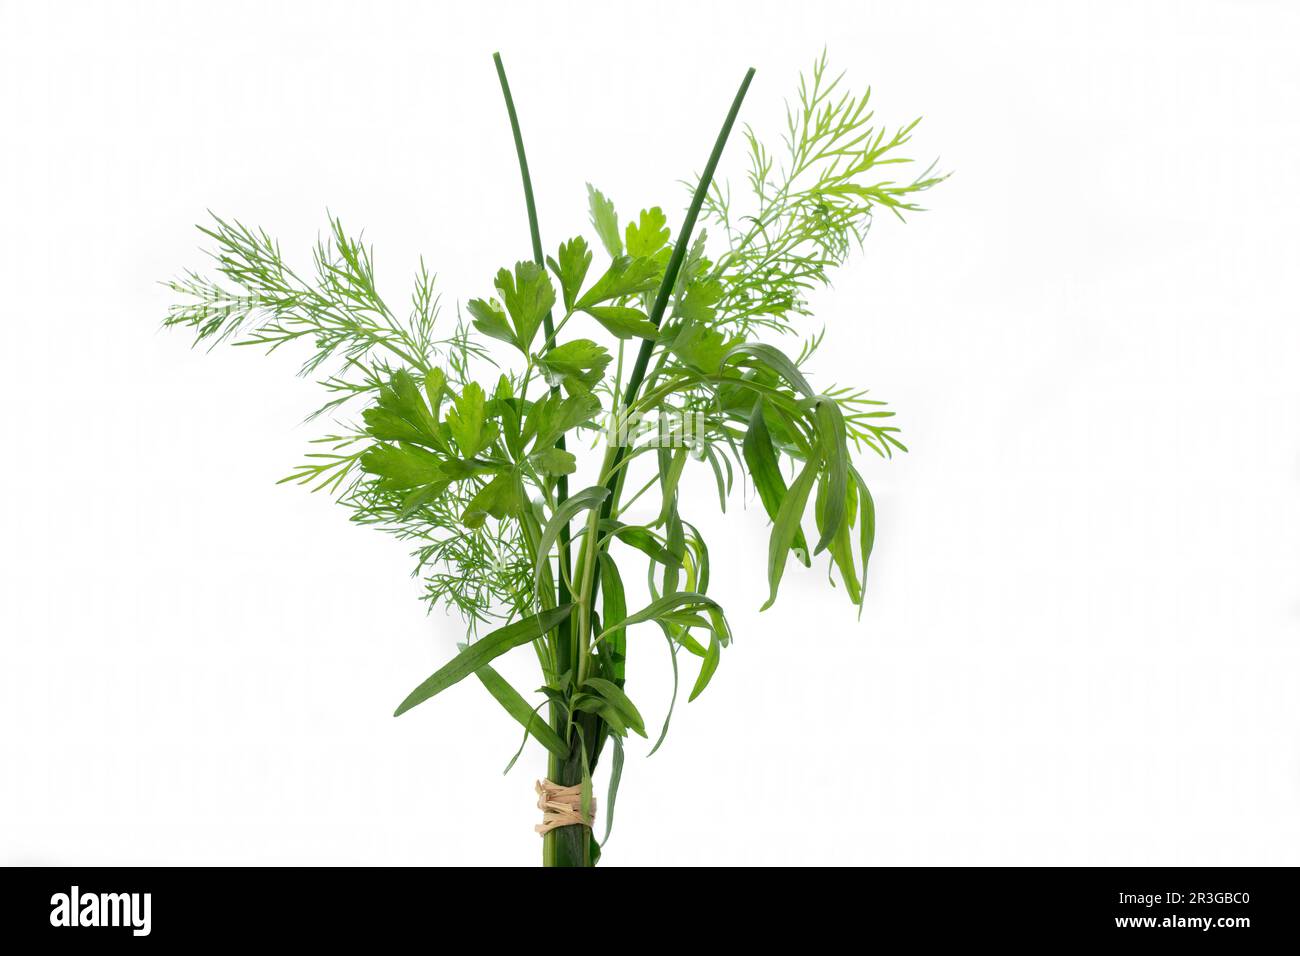 Bundle of fresh kitchen herbs on white Stock Photo